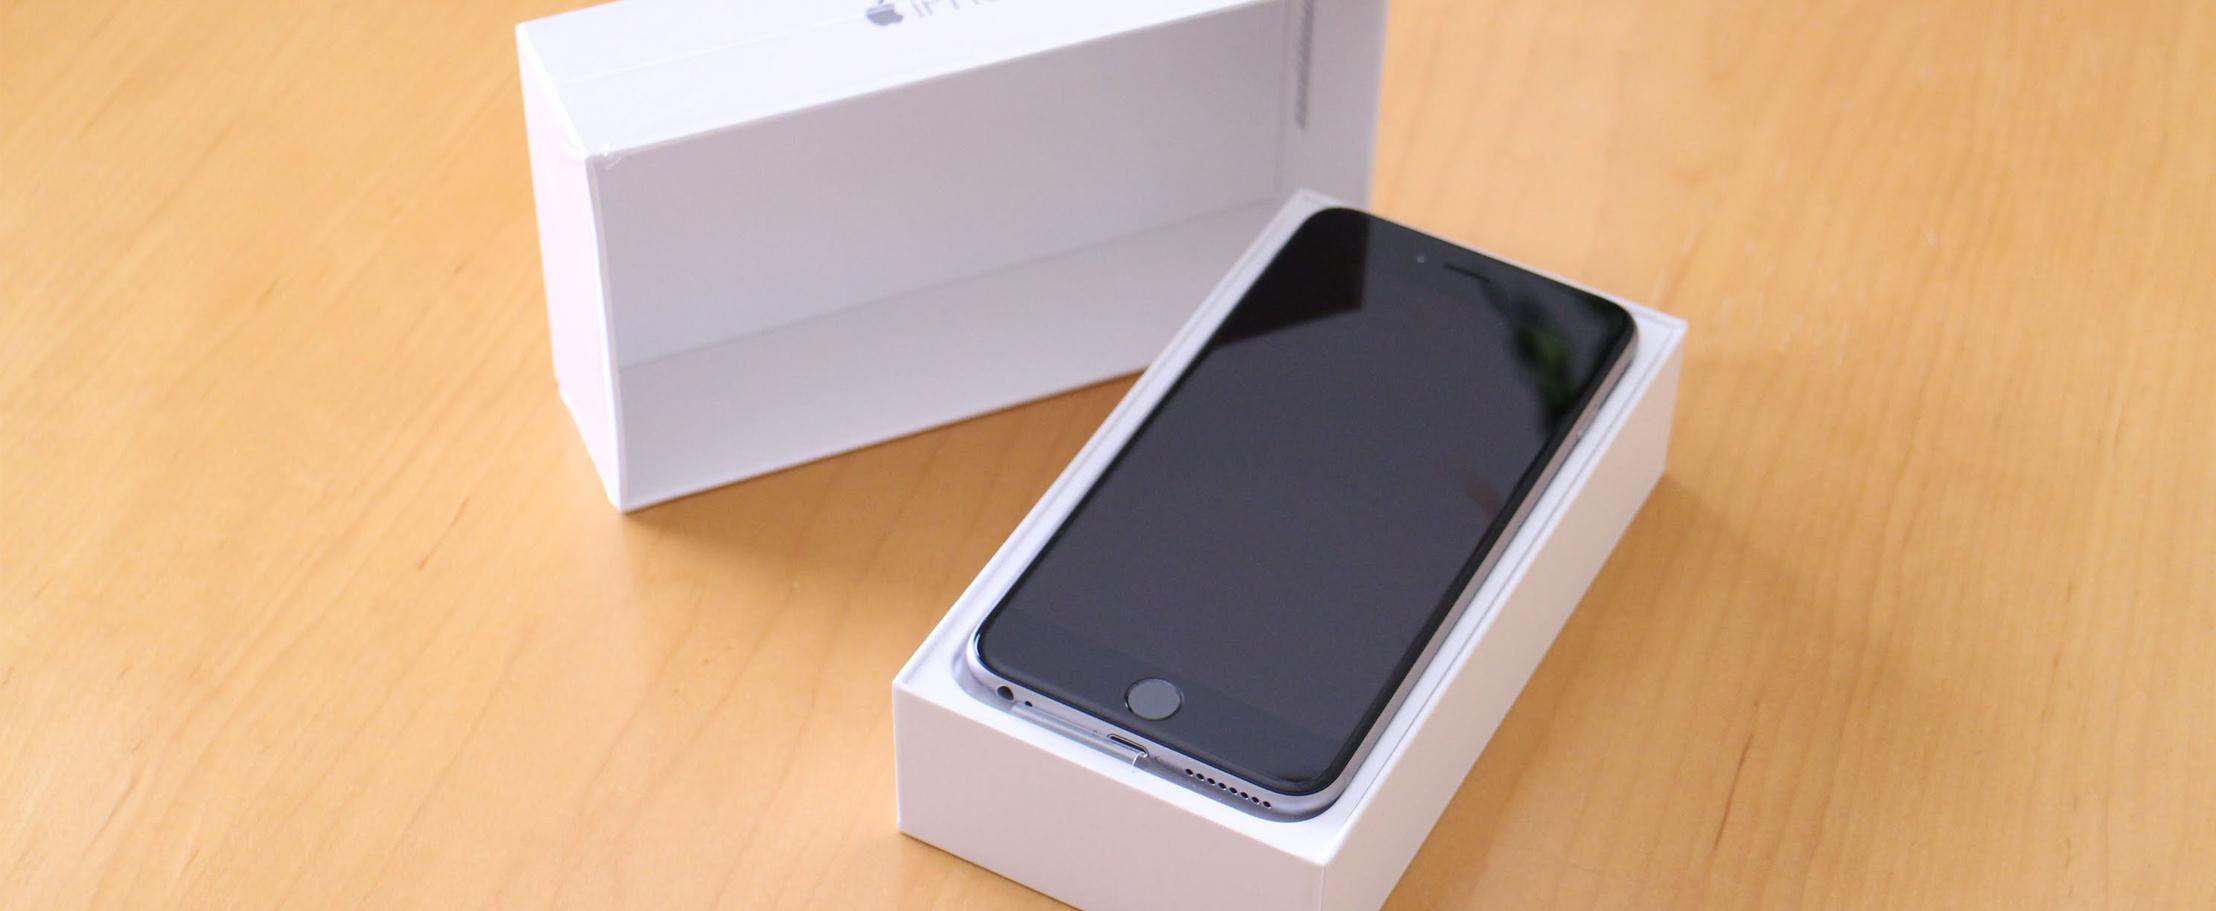 Почему все так активно раскупают Apple iPhone «Как новый»?